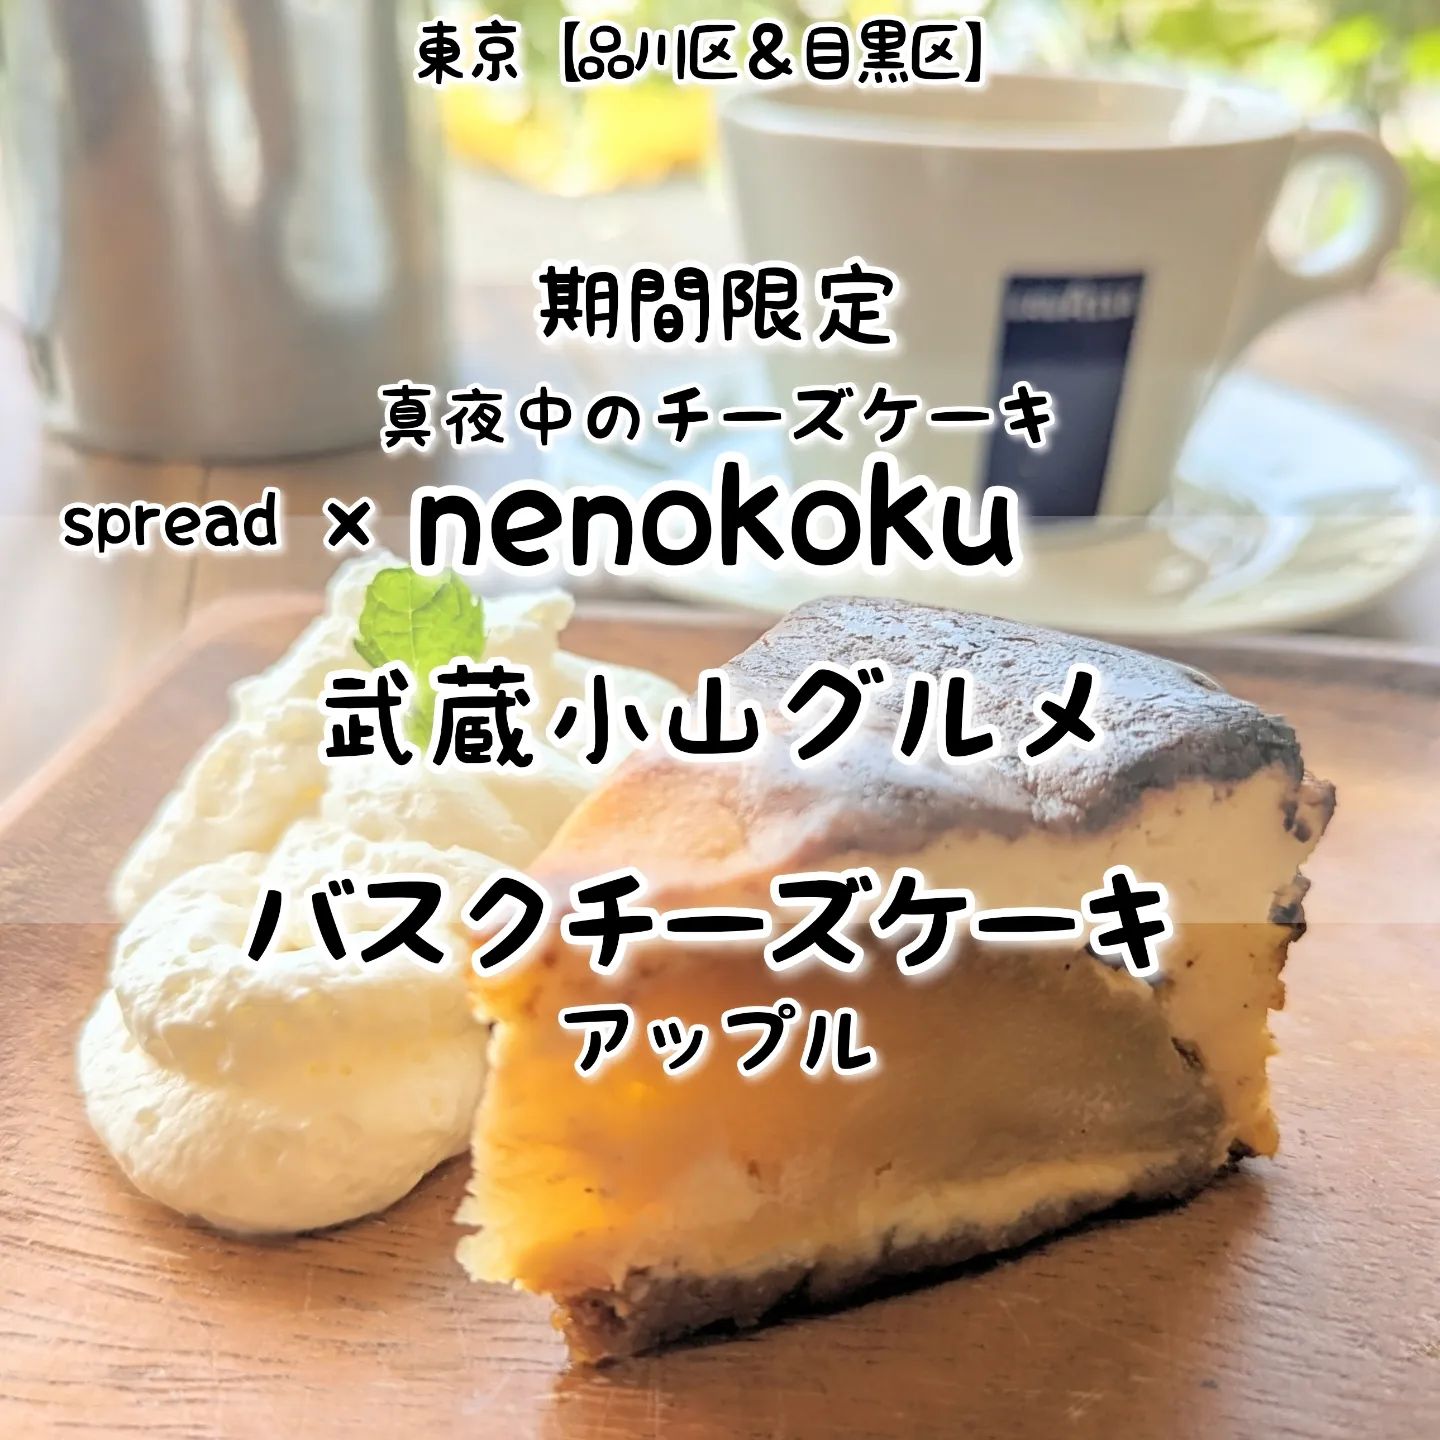 #武蔵小山グルメ情報 #nenokoku #アップルバスクチーズケーキ あっさり系－－☆－－こってり系オールド系－－－☆－ニュー系おもいで度－－☆－－ #侍猫度 しっとりなめらかな口当たりでゴロッとアップルのバスクチーズケーキが美味しい！甘さ控えめなでしっとりなめらかな口当たりで、真夜中にいただくのに濃厚すぎない丁度いい仕上がりのチーズケーキとなっております！もちろん一緒にいただいたspreadのお洒落サンドも美味しく映え系に仕上がっておりますぞ！こちらのお店は、お洒落なサンドイッチで有名なカフェspreadで期間限定販売される激レアなバスクチーズケーキでございます。店に入ると、正面にはお洒落サンドが並んだショーケースがあり周りにはテーブル席が数カ所ございまして、シンプルで大人お洒落なデザインが広がっております。店名のnenokokuは、真夜中を意味する子の刻からきておりまして、気になる次回の真夜中のチーズケーキの販売日については、nenokokuインスタで確認できますぞ。真夜中のチーズケーキnenokoku@neno_koku場所は、武蔵小山駅から26号線を目黒郵便局方面に向かって、かむろ坂との交差点を右に曲がり200mほど進んだら右手側にございます。【侍猫へ連絡】気になるお店やグルメ情報などお気軽にメッセージください！武蔵小山近隣の皆様にご案内致します！ぜひお仕事もご依頼ください！【侍猫を応援】「フォロー」＆「いいね」＆「保存」どうぞよろしくお願いします！【もっと侍猫を応援】メインサイトでいろいろ見ていただくと侍猫が元気になってもっと食べ歩きます！いつもクリックありがとうございます！▼お店の地図＆追加画像あり！▼→ https://musashikoyama.samuraicat.jp/ → @musashikoyama.news ※メインサイトへの移動はプロフィールのURLが簡単！ #武蔵小山 #武蔵小山グルメ #西小山 #戸越銀座 #不動前 #碑文谷 #戸越 #中延 #荏原中延 #目黒本町 #下目黒 #品川区 #品川区グルメ #目黒区 #目黒区グルメ #東京グルメ #東京散歩 #東京観光  #tokyotrip #tokyo #japanesefood #japantravel #東京カフェ #武蔵小山カフェ #東京スイーツ #バスクチーズケーキ